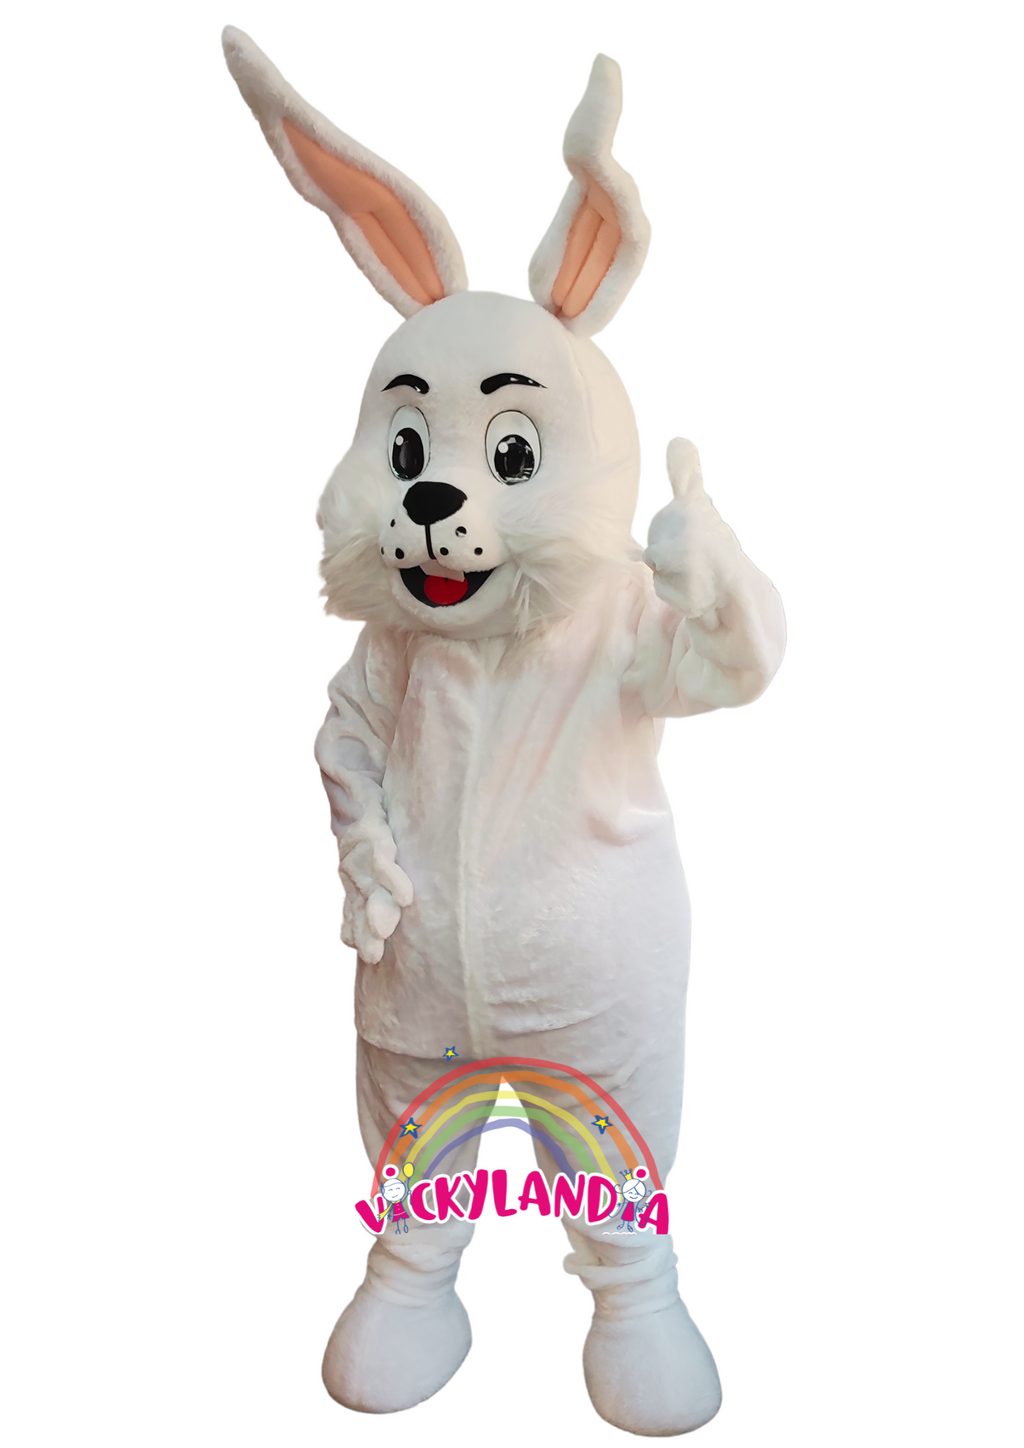 Descubre la magia de nuestro muñeco publicitario de Conejo Blanco en Vickylandia. Son disfraces cabezones perfectos para fiestas infantiles, shows, cumpleaños, estrategias publicitarias, carnavales, fiestas patronales, espectáculos, cabalgatas y cualquier tipo de evento.